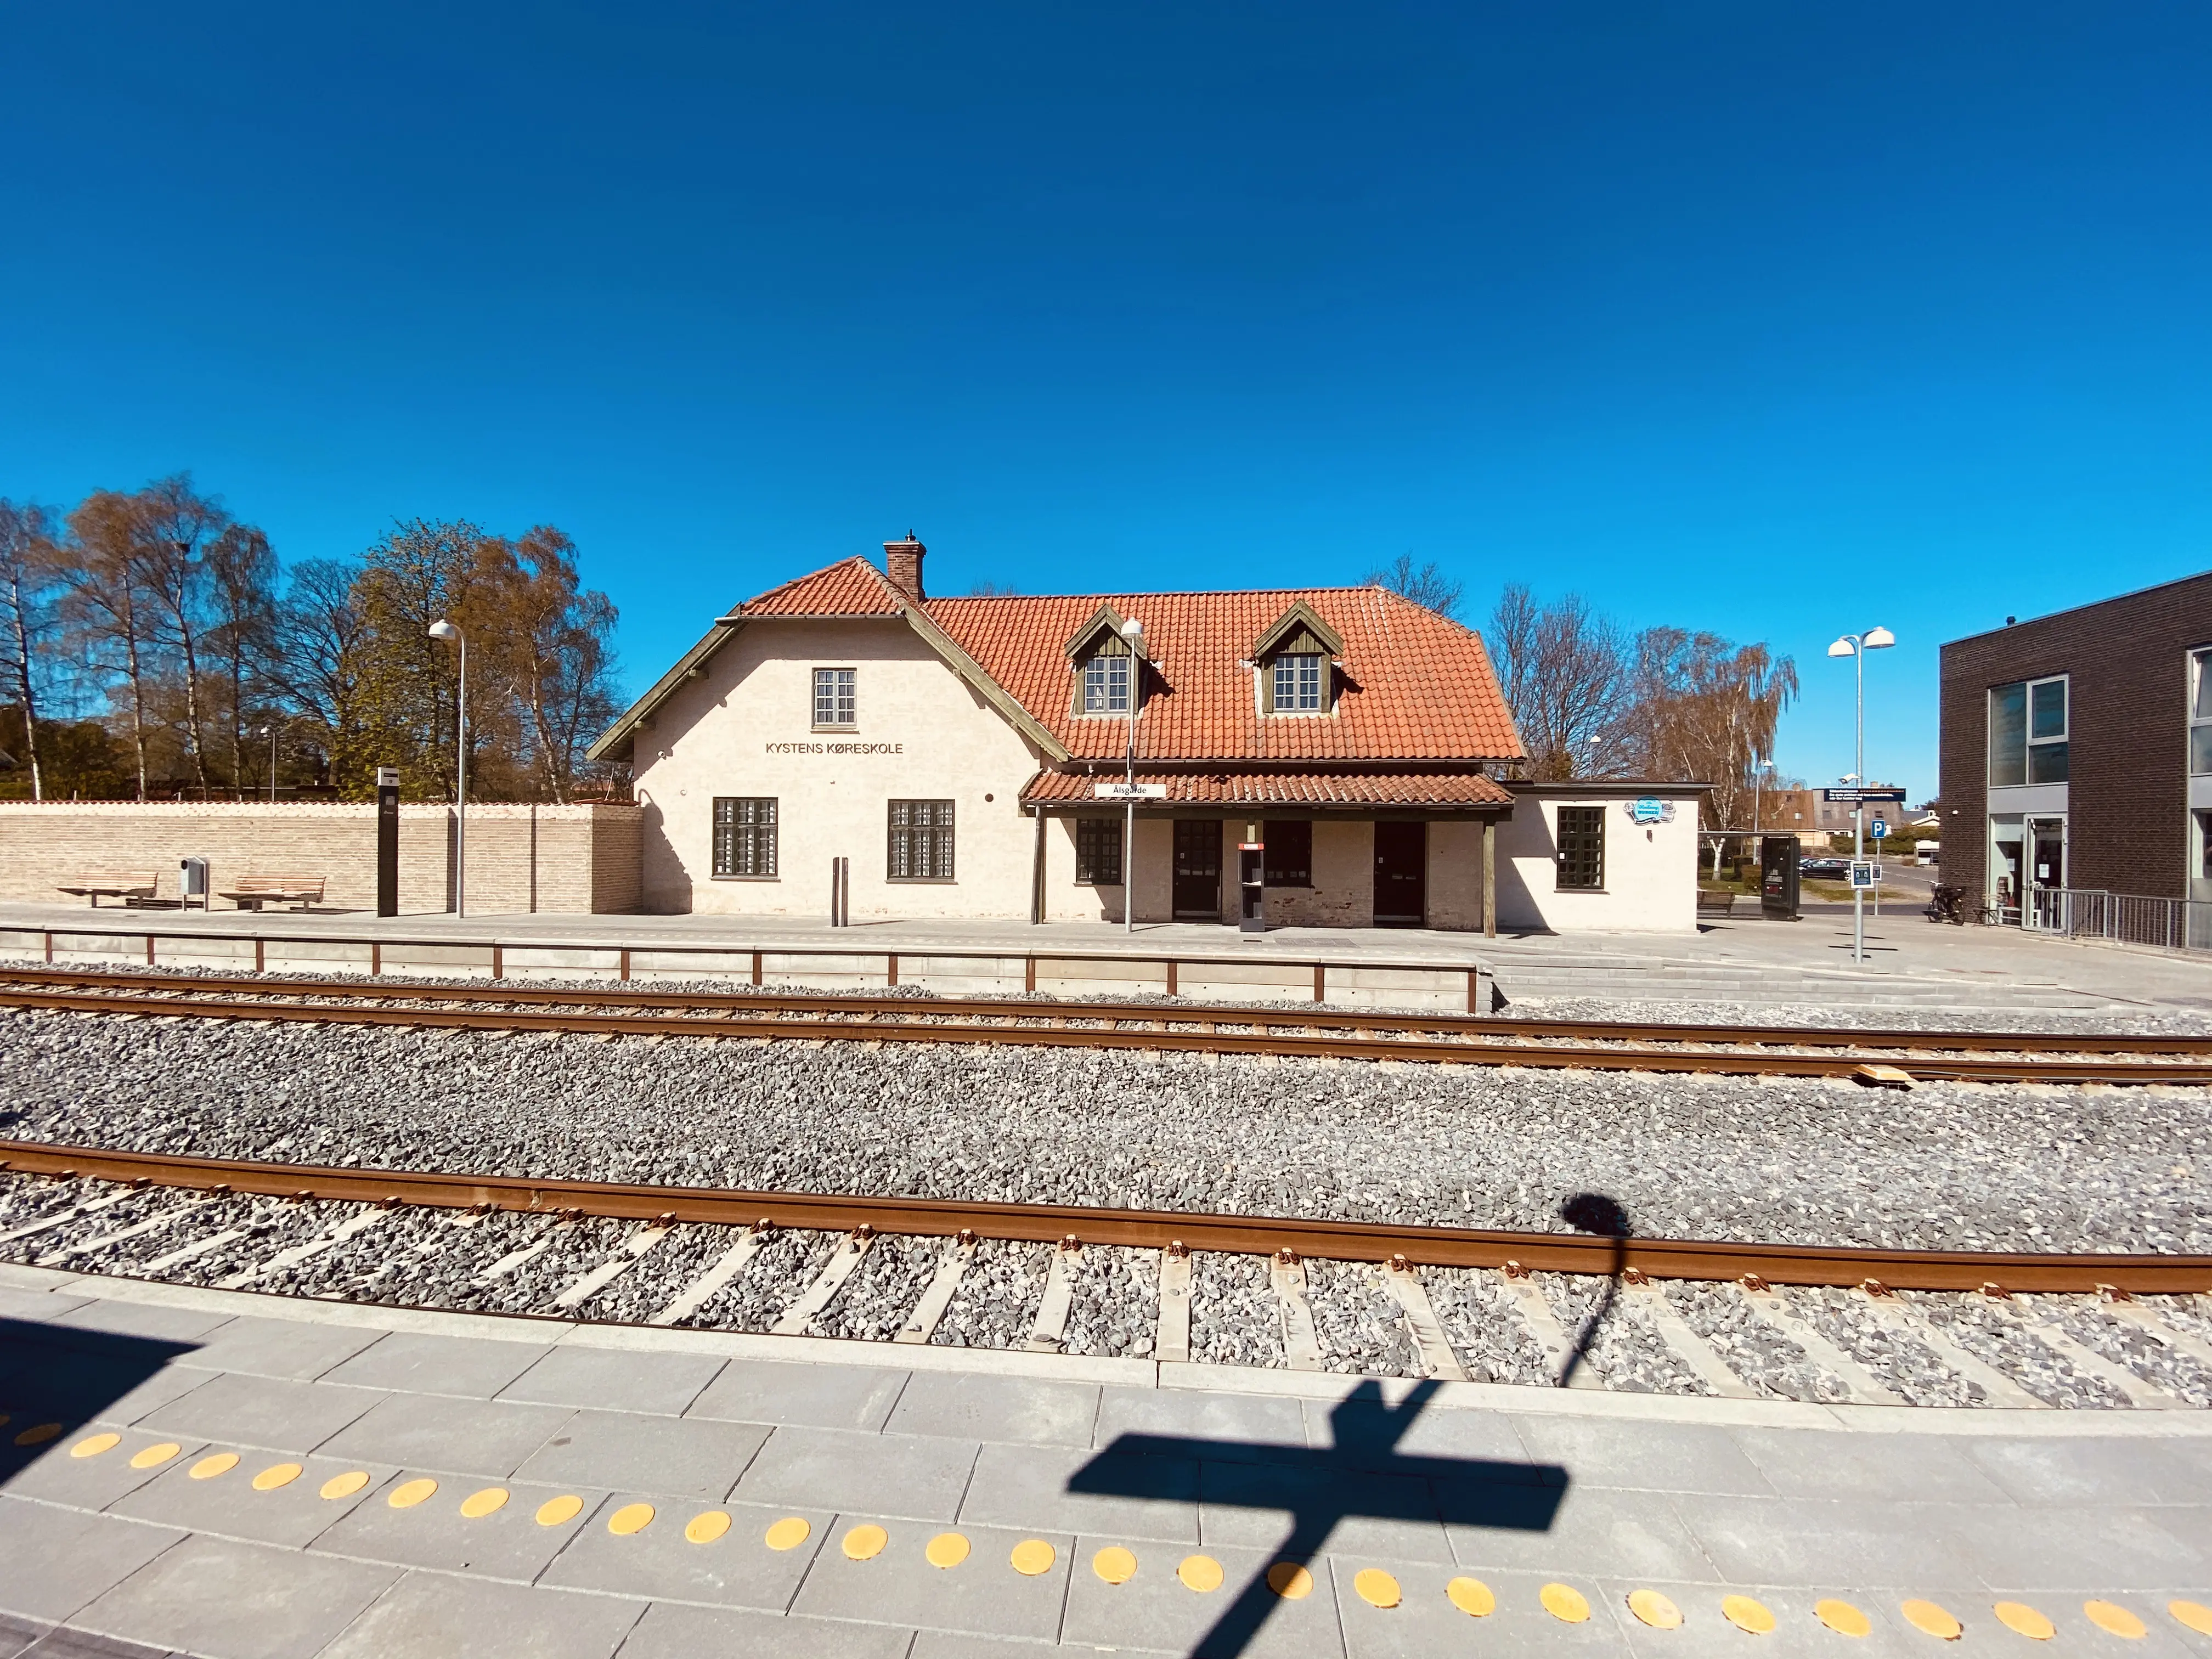 Ålsgårde Station.